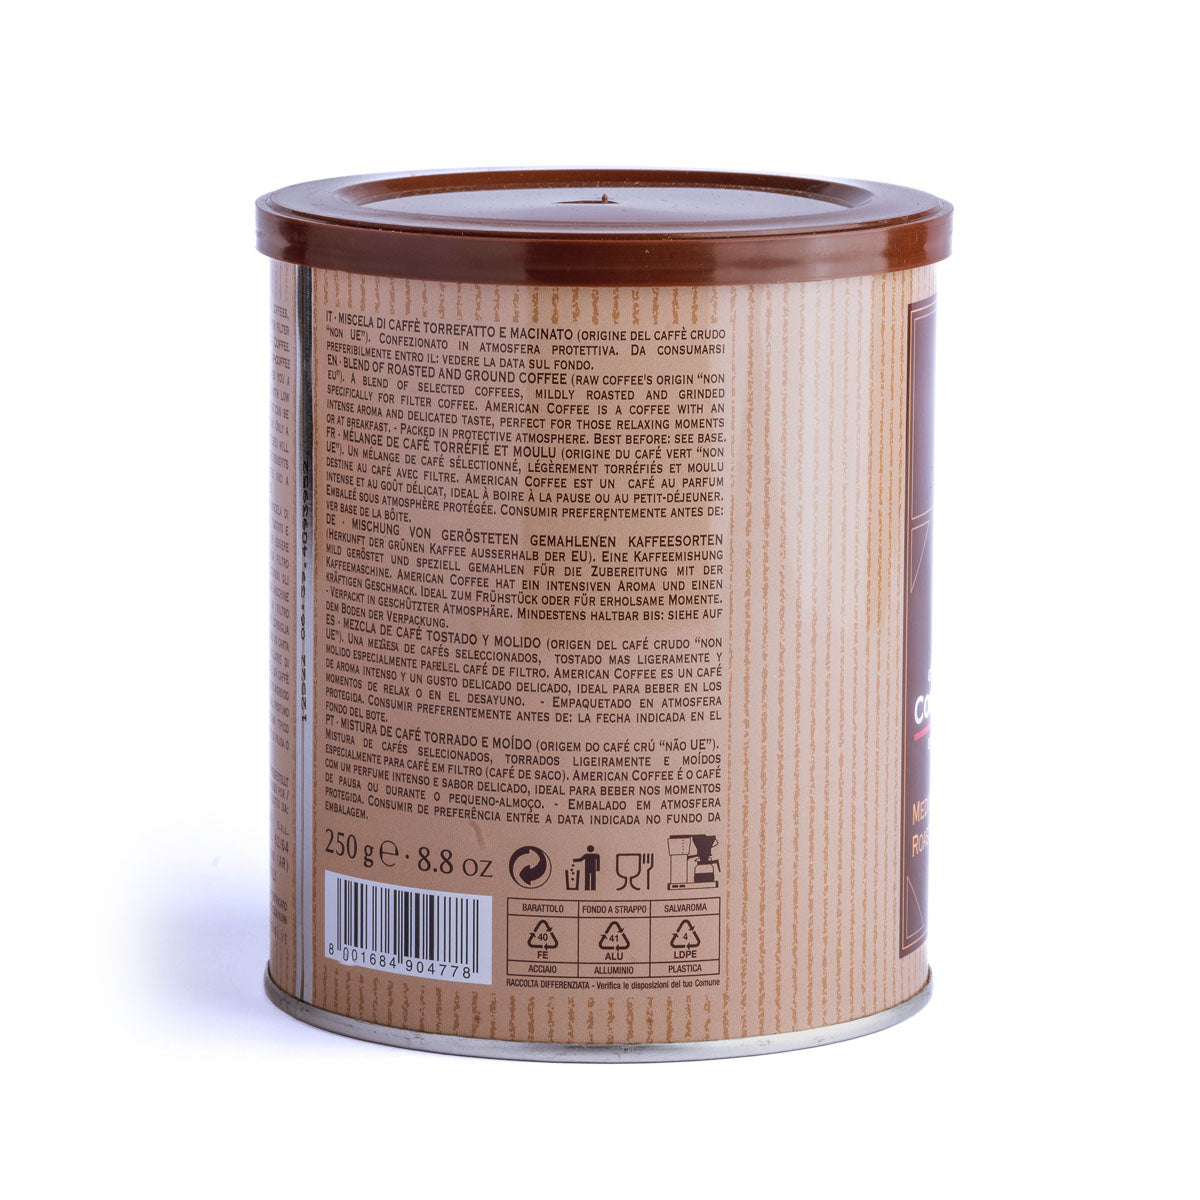 American Coffee | Caffè filtro | Macinato | Lattina da 250g | Cartone con 12 confezioni